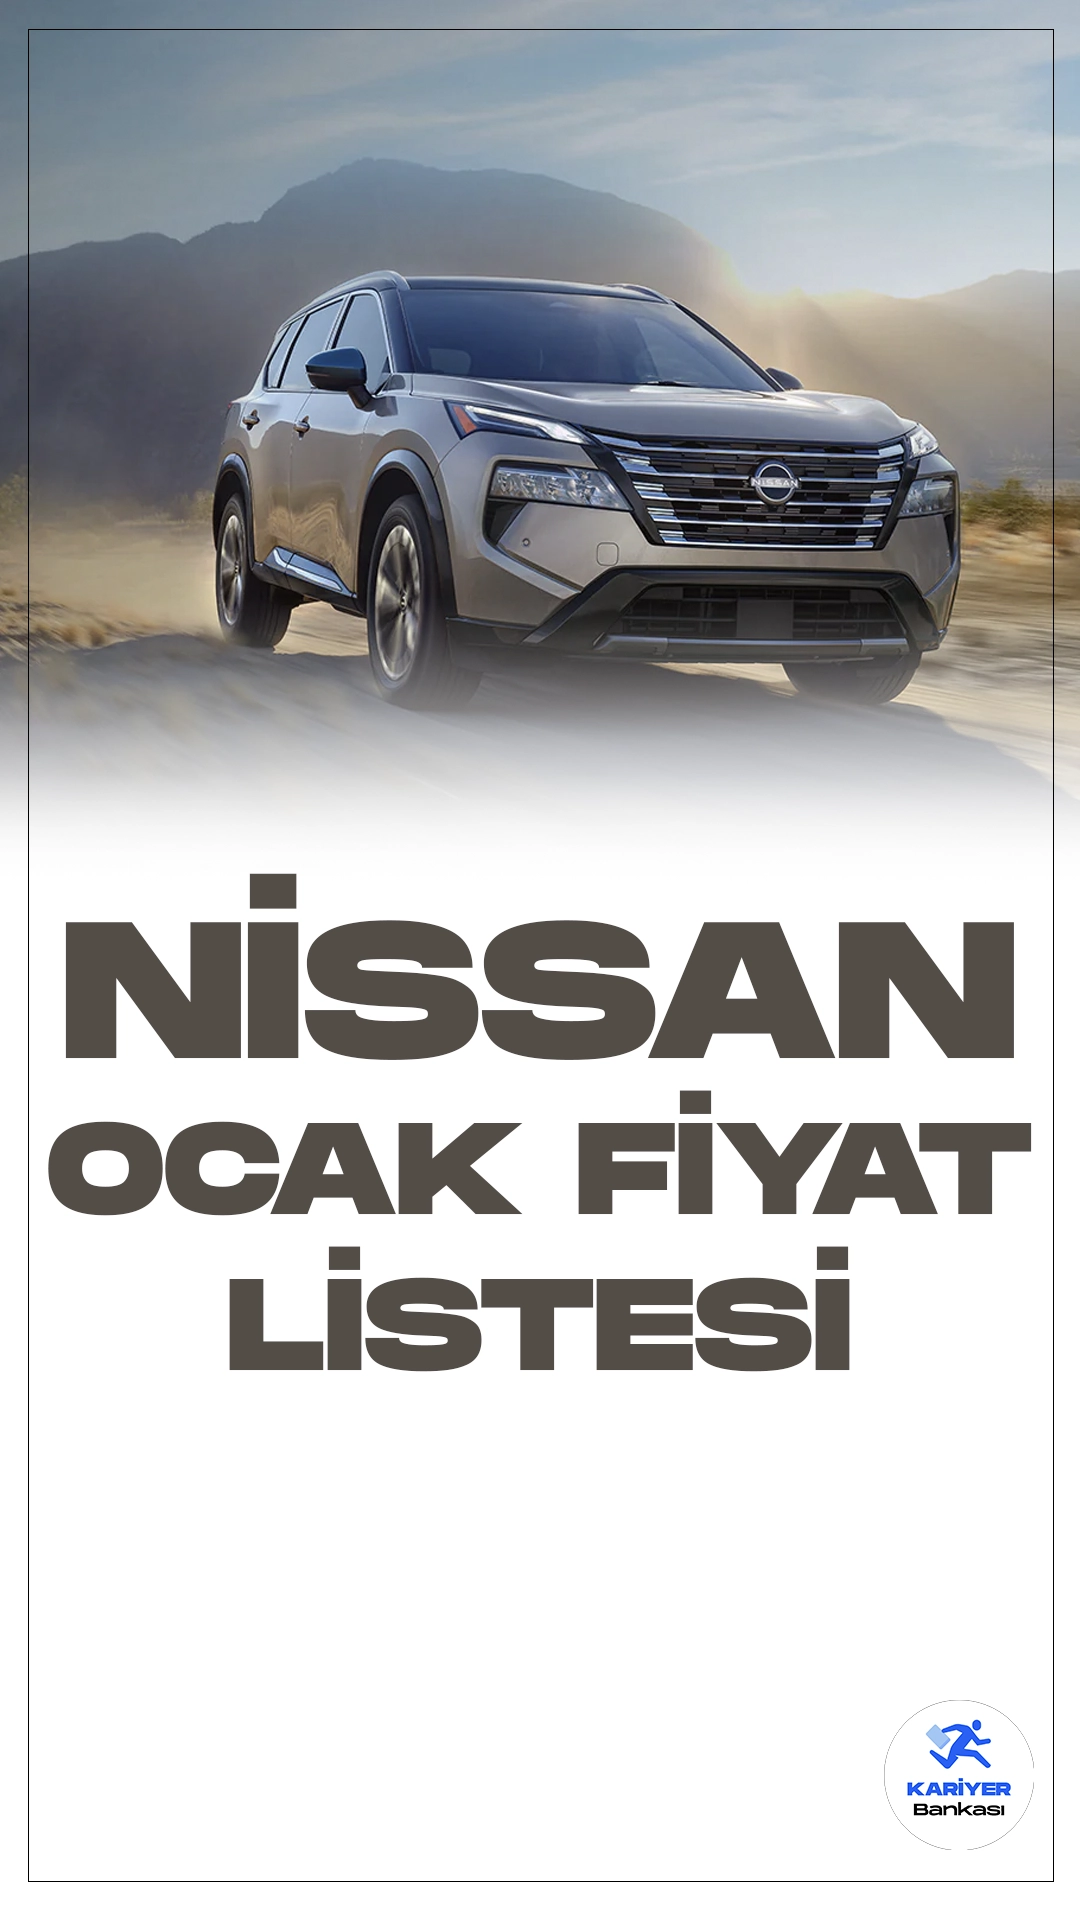 Nissan Ocak 2024 Fiyat Listesi Yayımlandı.Nissan, geniş ve çeşitli araç yelpazesiyle dikkat çeken modellerini sürekli olarak güncellemeye devam ediyor. Bu modeller arasında özellikle dikkat çekenler, Nissan QASHQAI, QASHQAI e-POWER, X-TRAIL, X-TRAIL e-4ORCE ve JUKE.